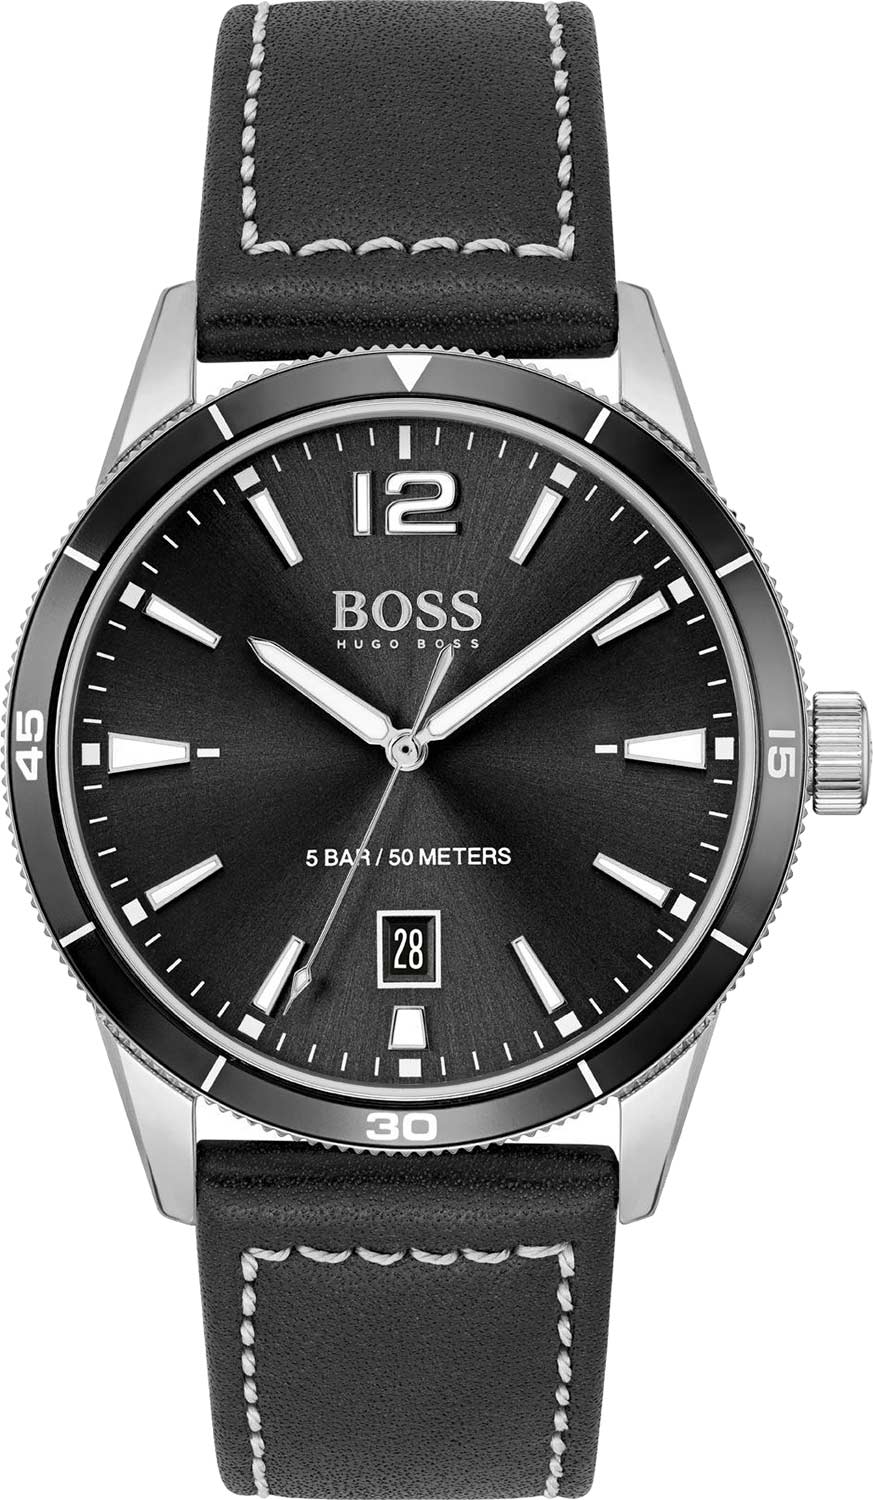   Hugo Boss HB1513898